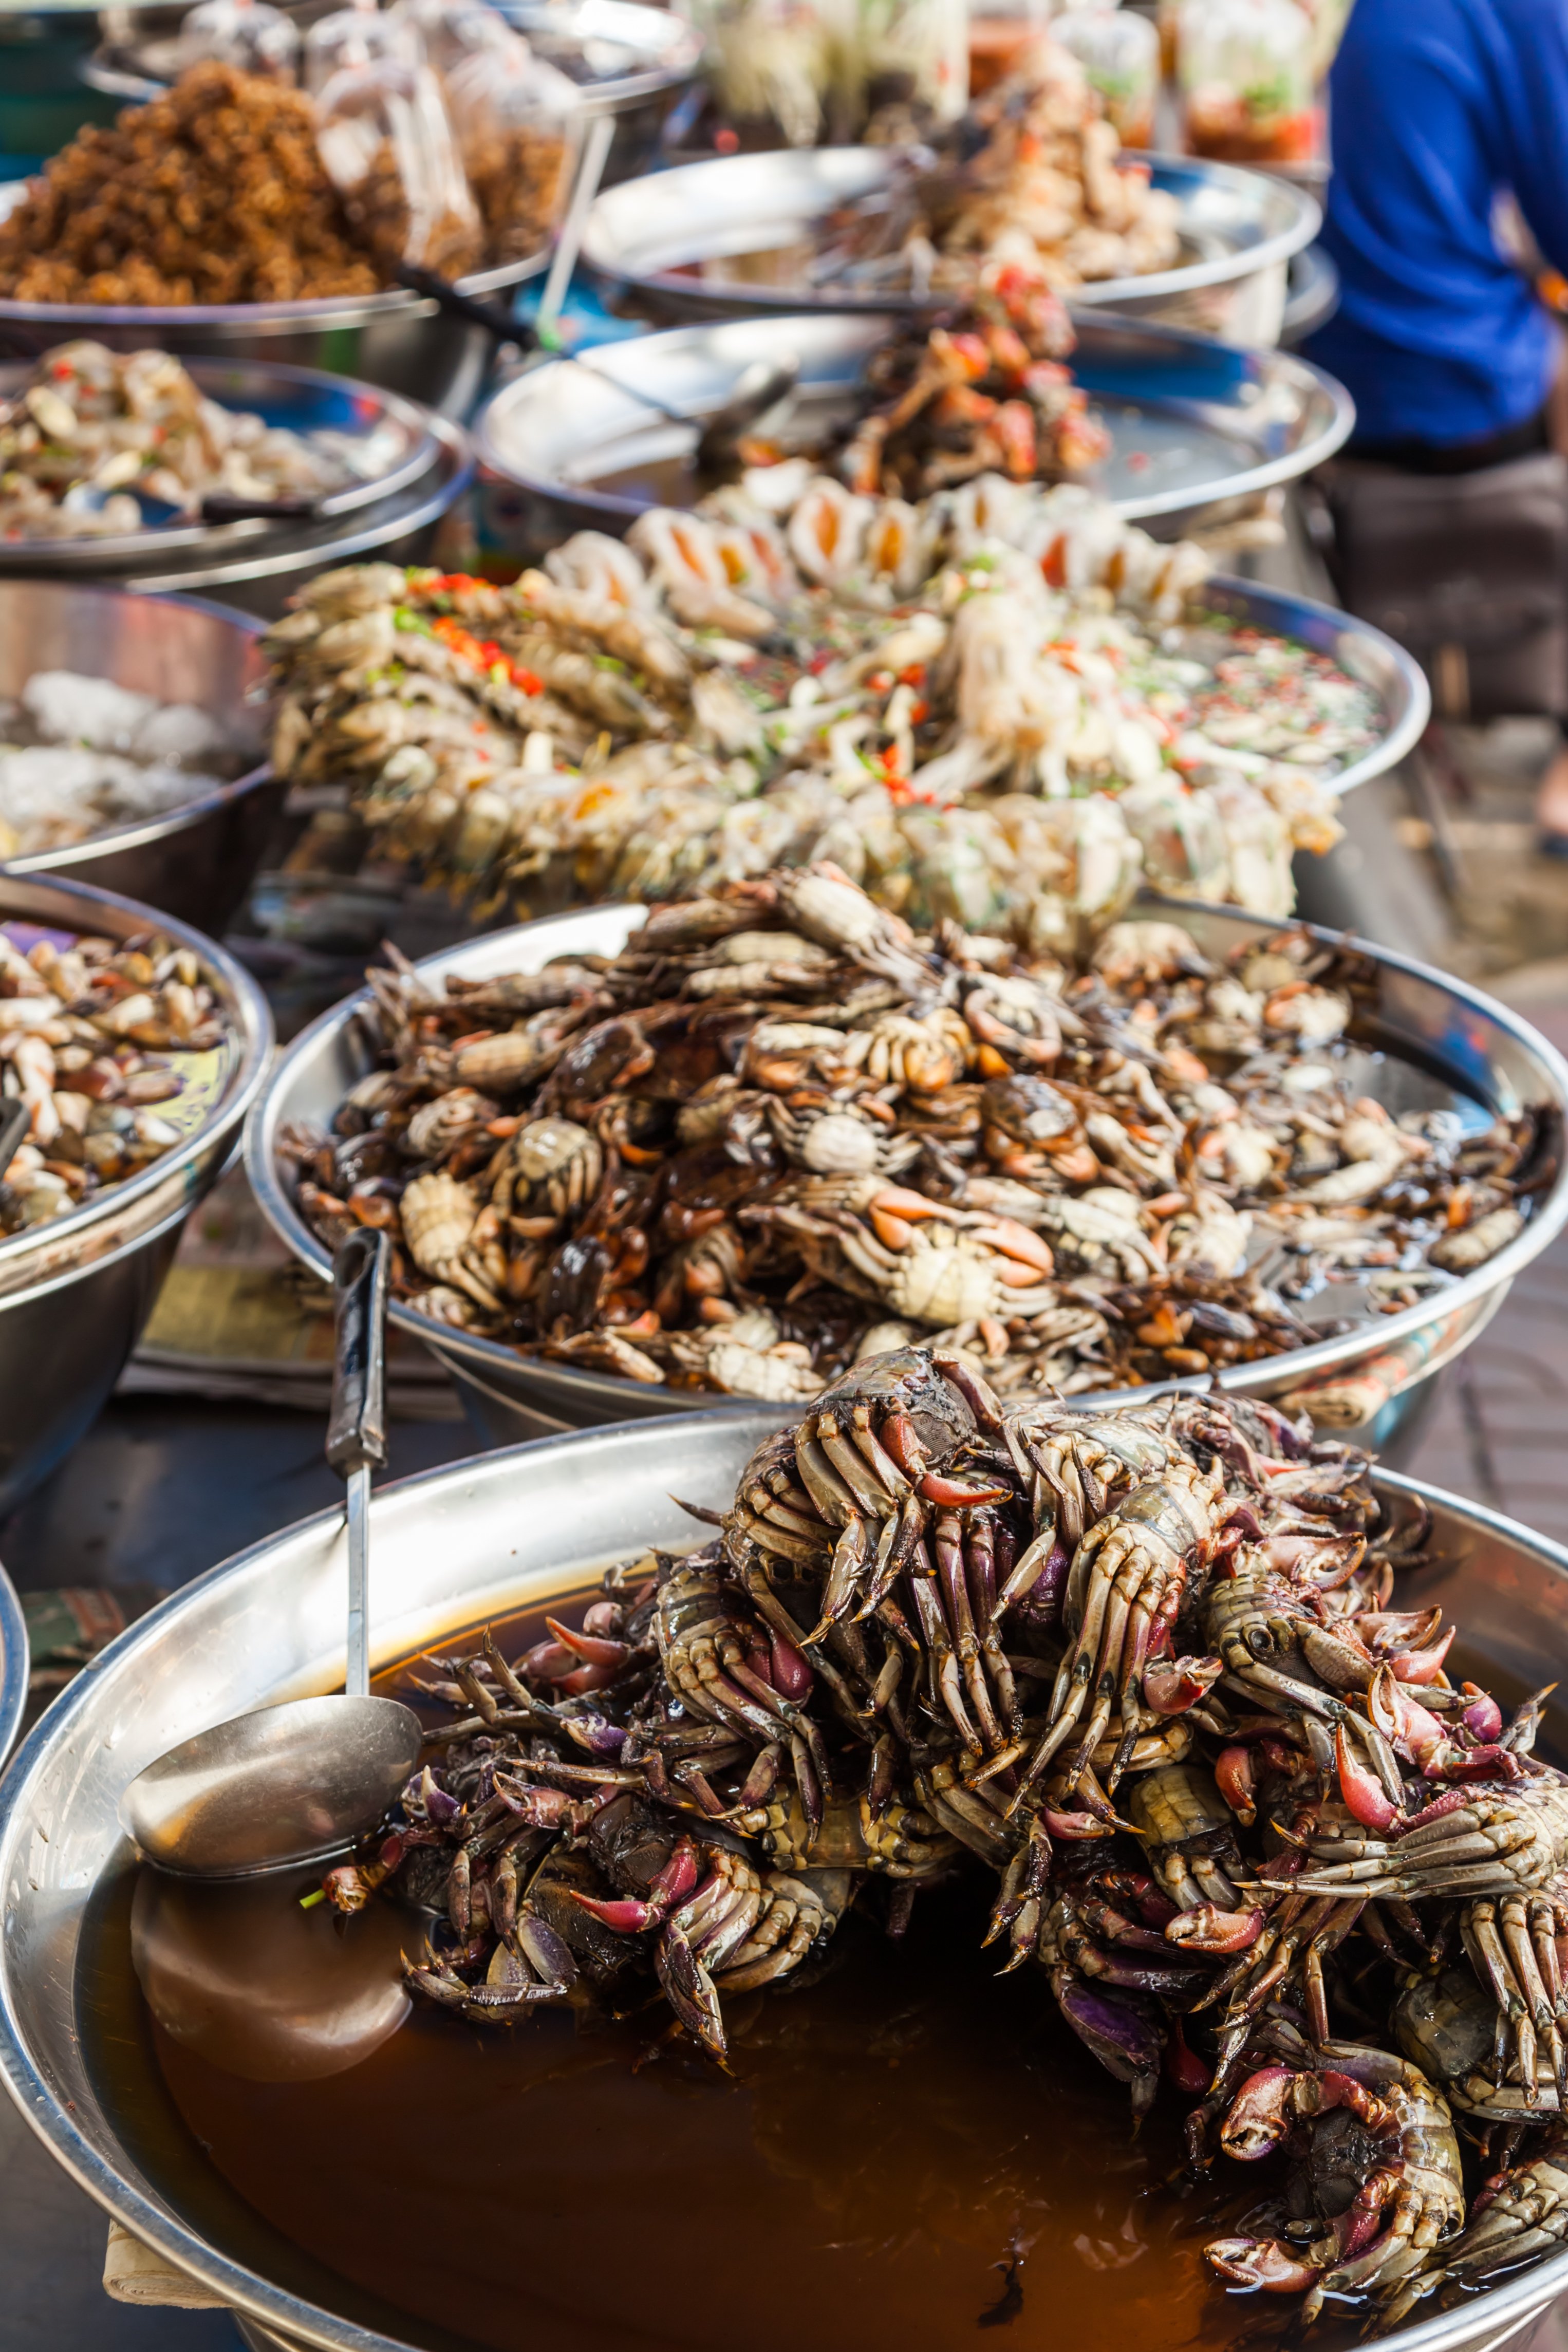 O surto inicial atingiu pessoas que tiveram alguma associação a um
mercado de frutos do mar em Wuhan – o que despertou a suspeita de
que a transmissão desta variação de coronavírus ocorreu entre
animais marinhos e humanos.  